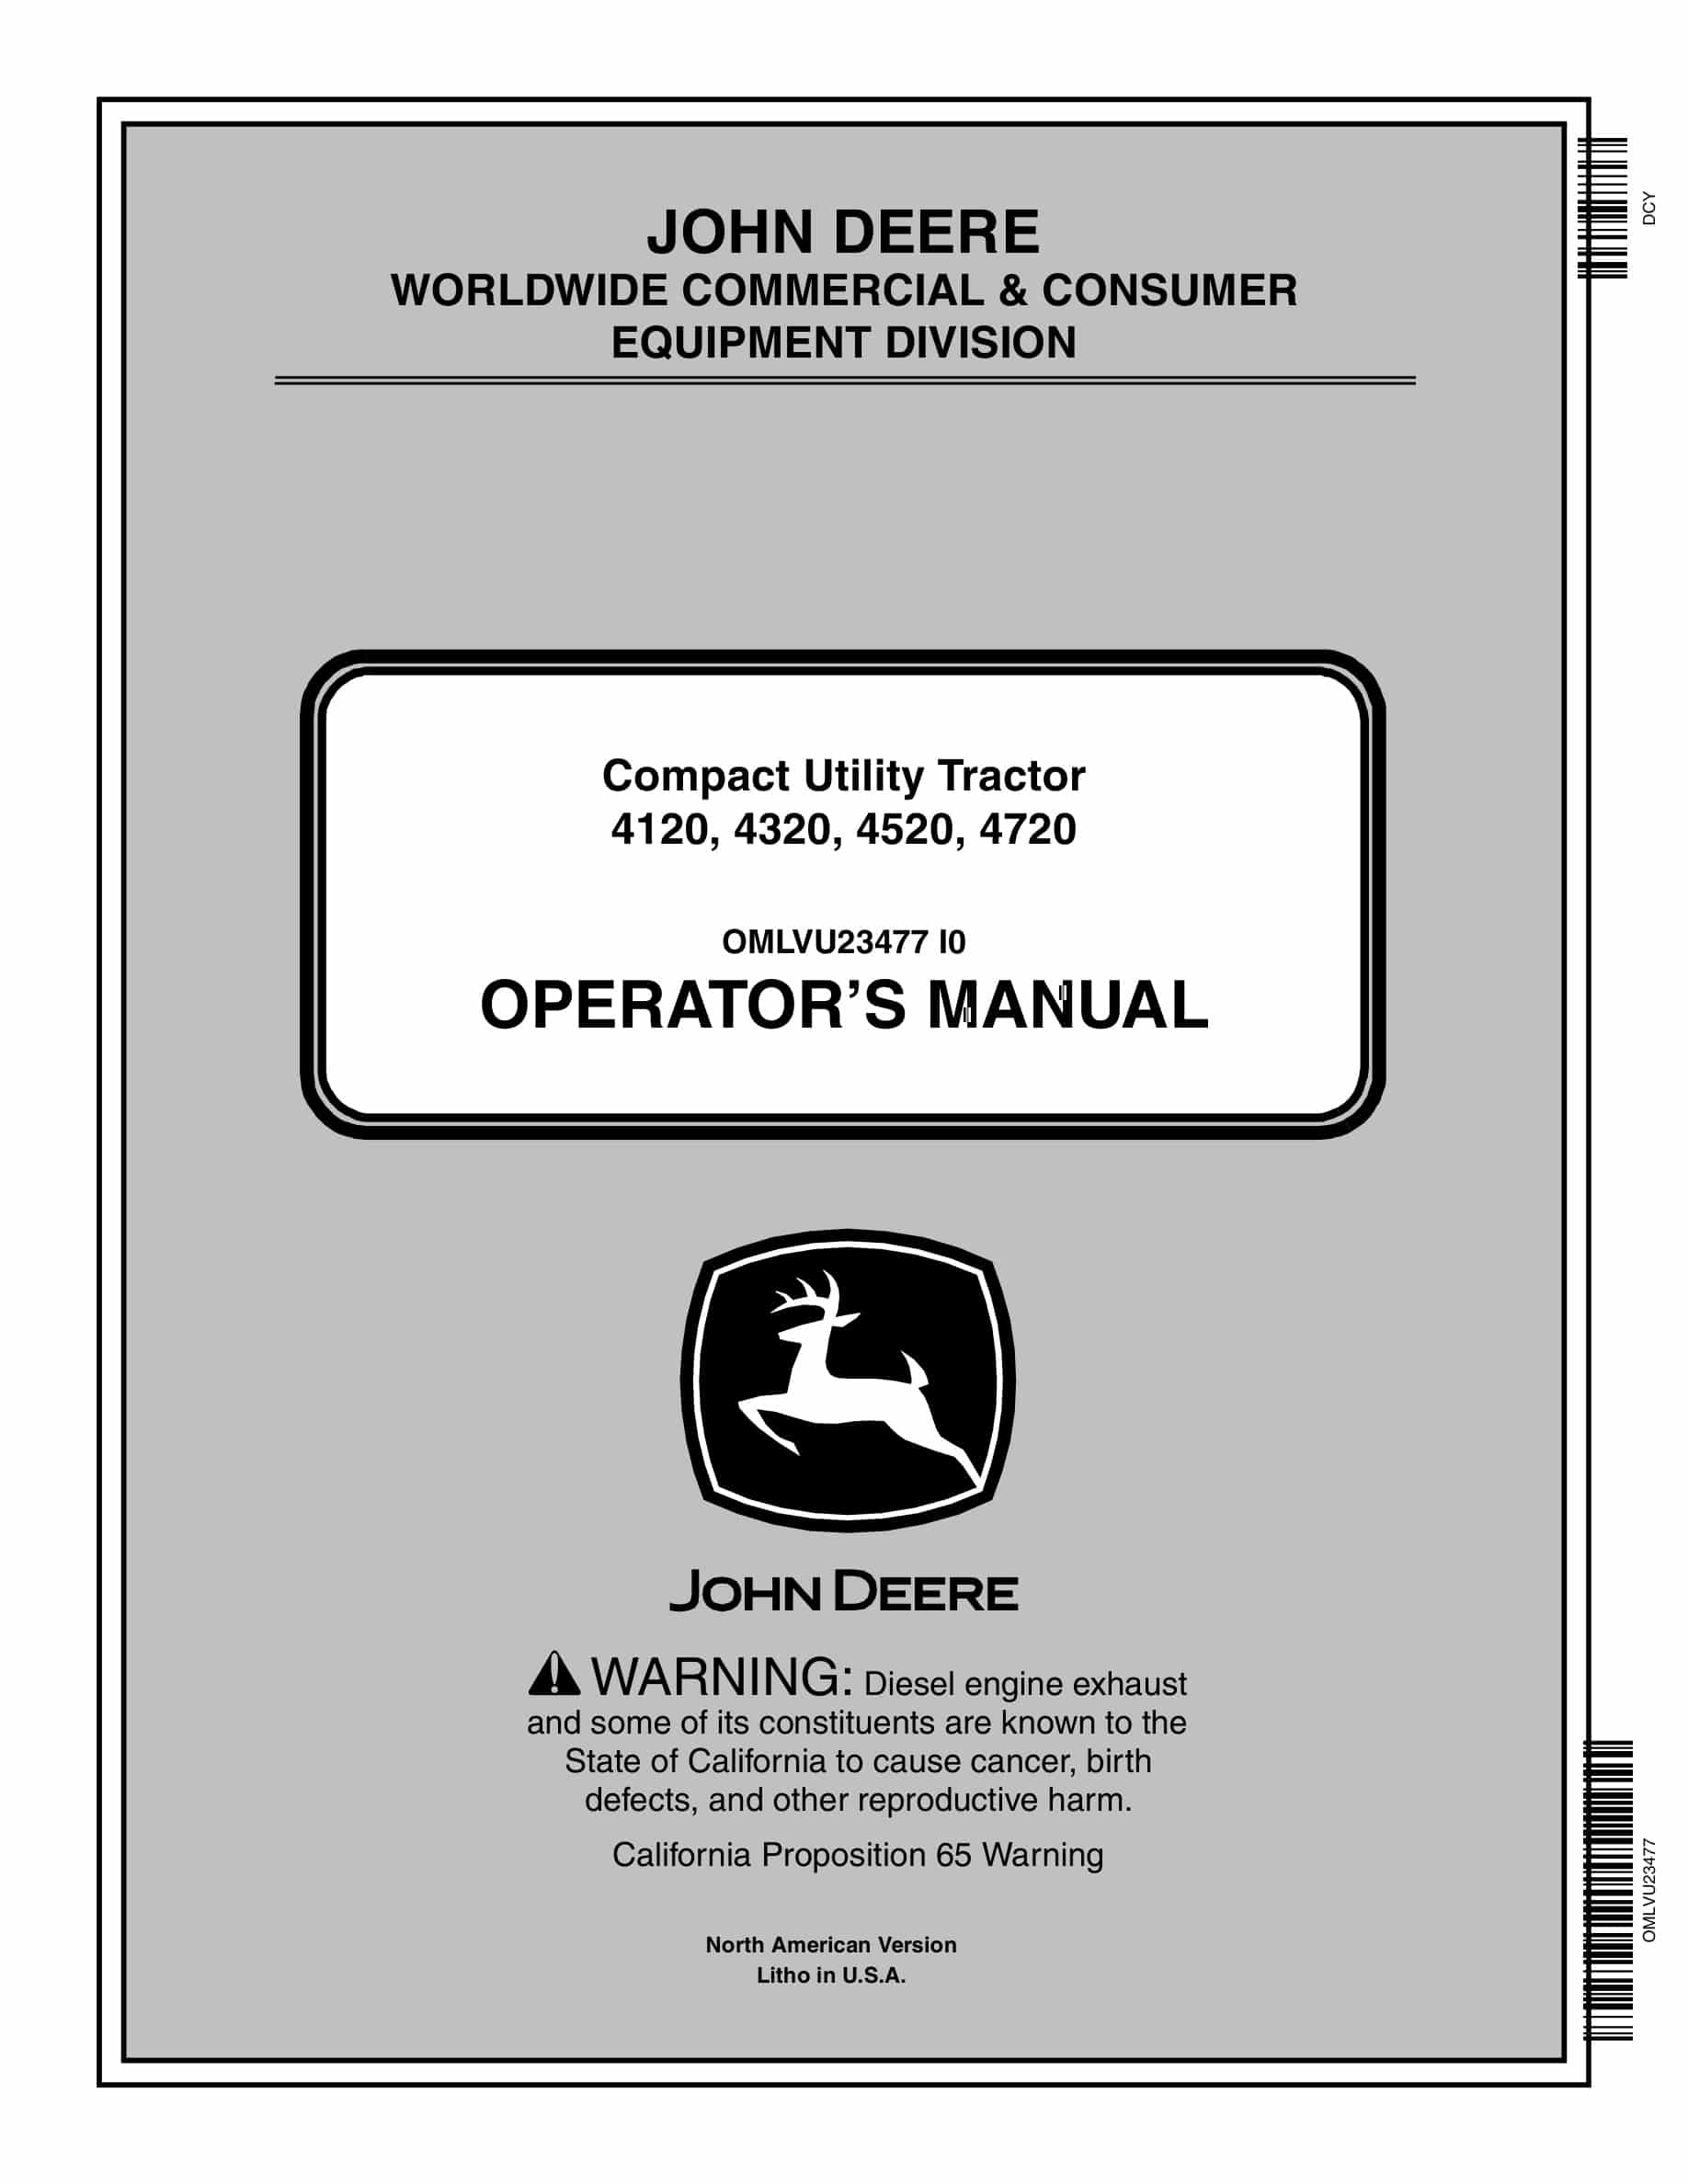 John Deere 4120, 4320, 4520, 4720 Tractor Operator Manual OMLVU23477-1